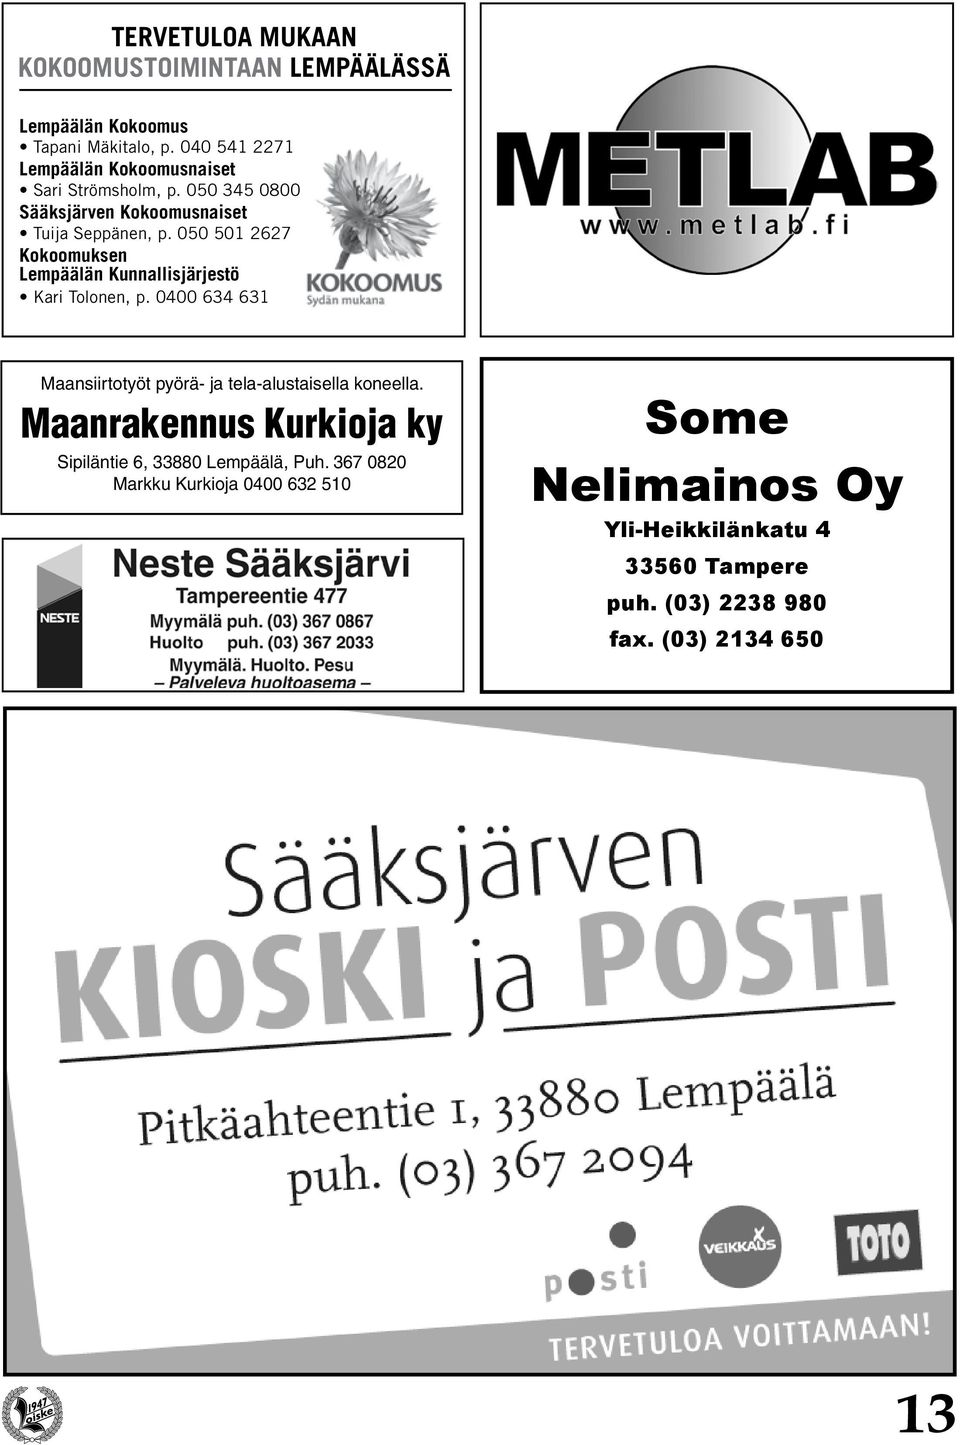 050 501 2627 Kokoomuksen Lempäälän Kunnallisjärjestö Kari Tolonen, p.